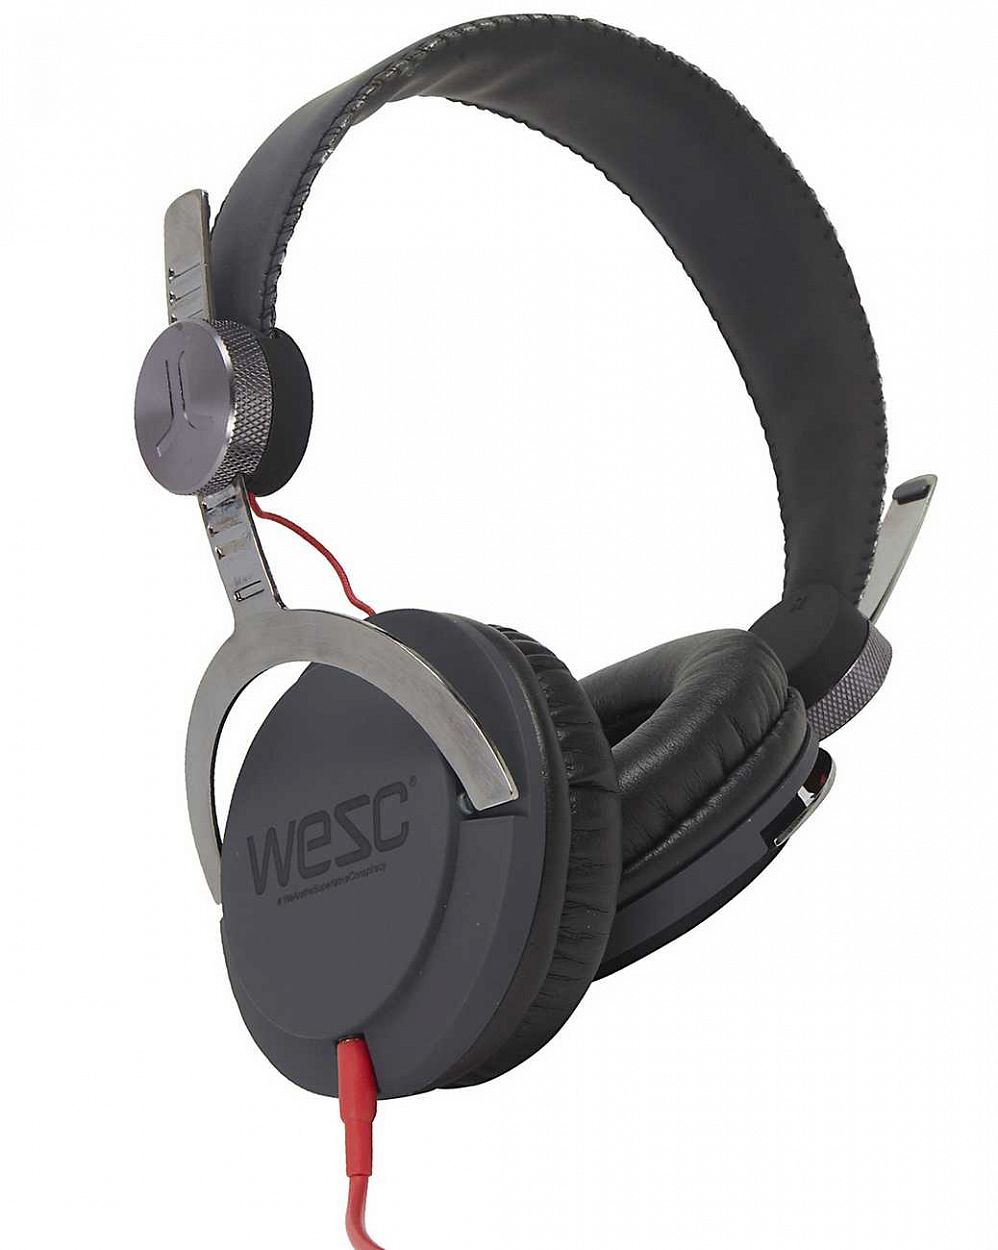 Наушники WeSC C5 Bass premium headphones, Dark shadow отзывы